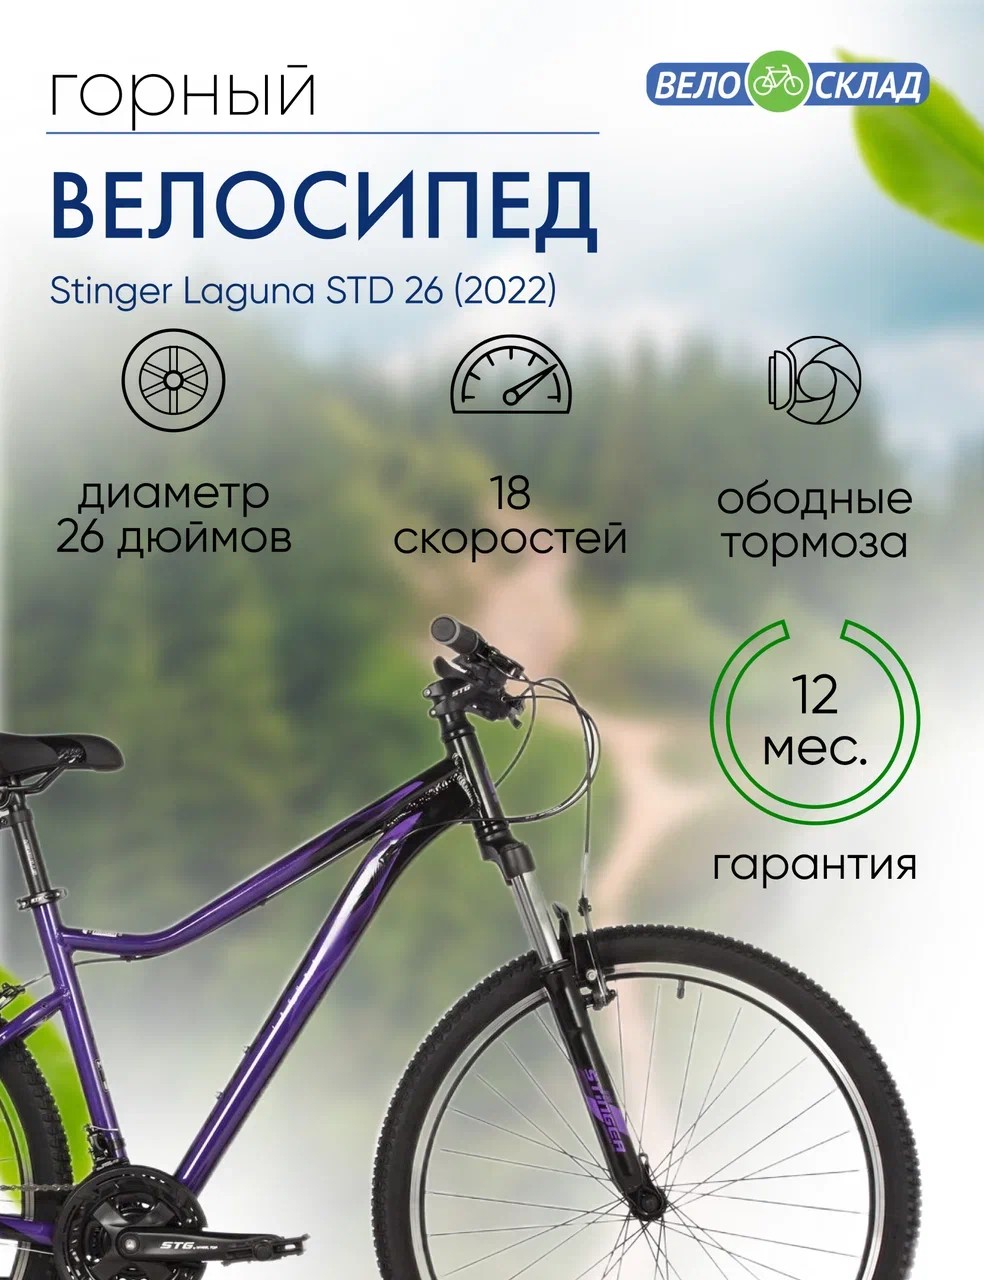 Женский велосипед Stinger Laguna STD 26, год 2022, цвет Фиолетовый, ростовка 15